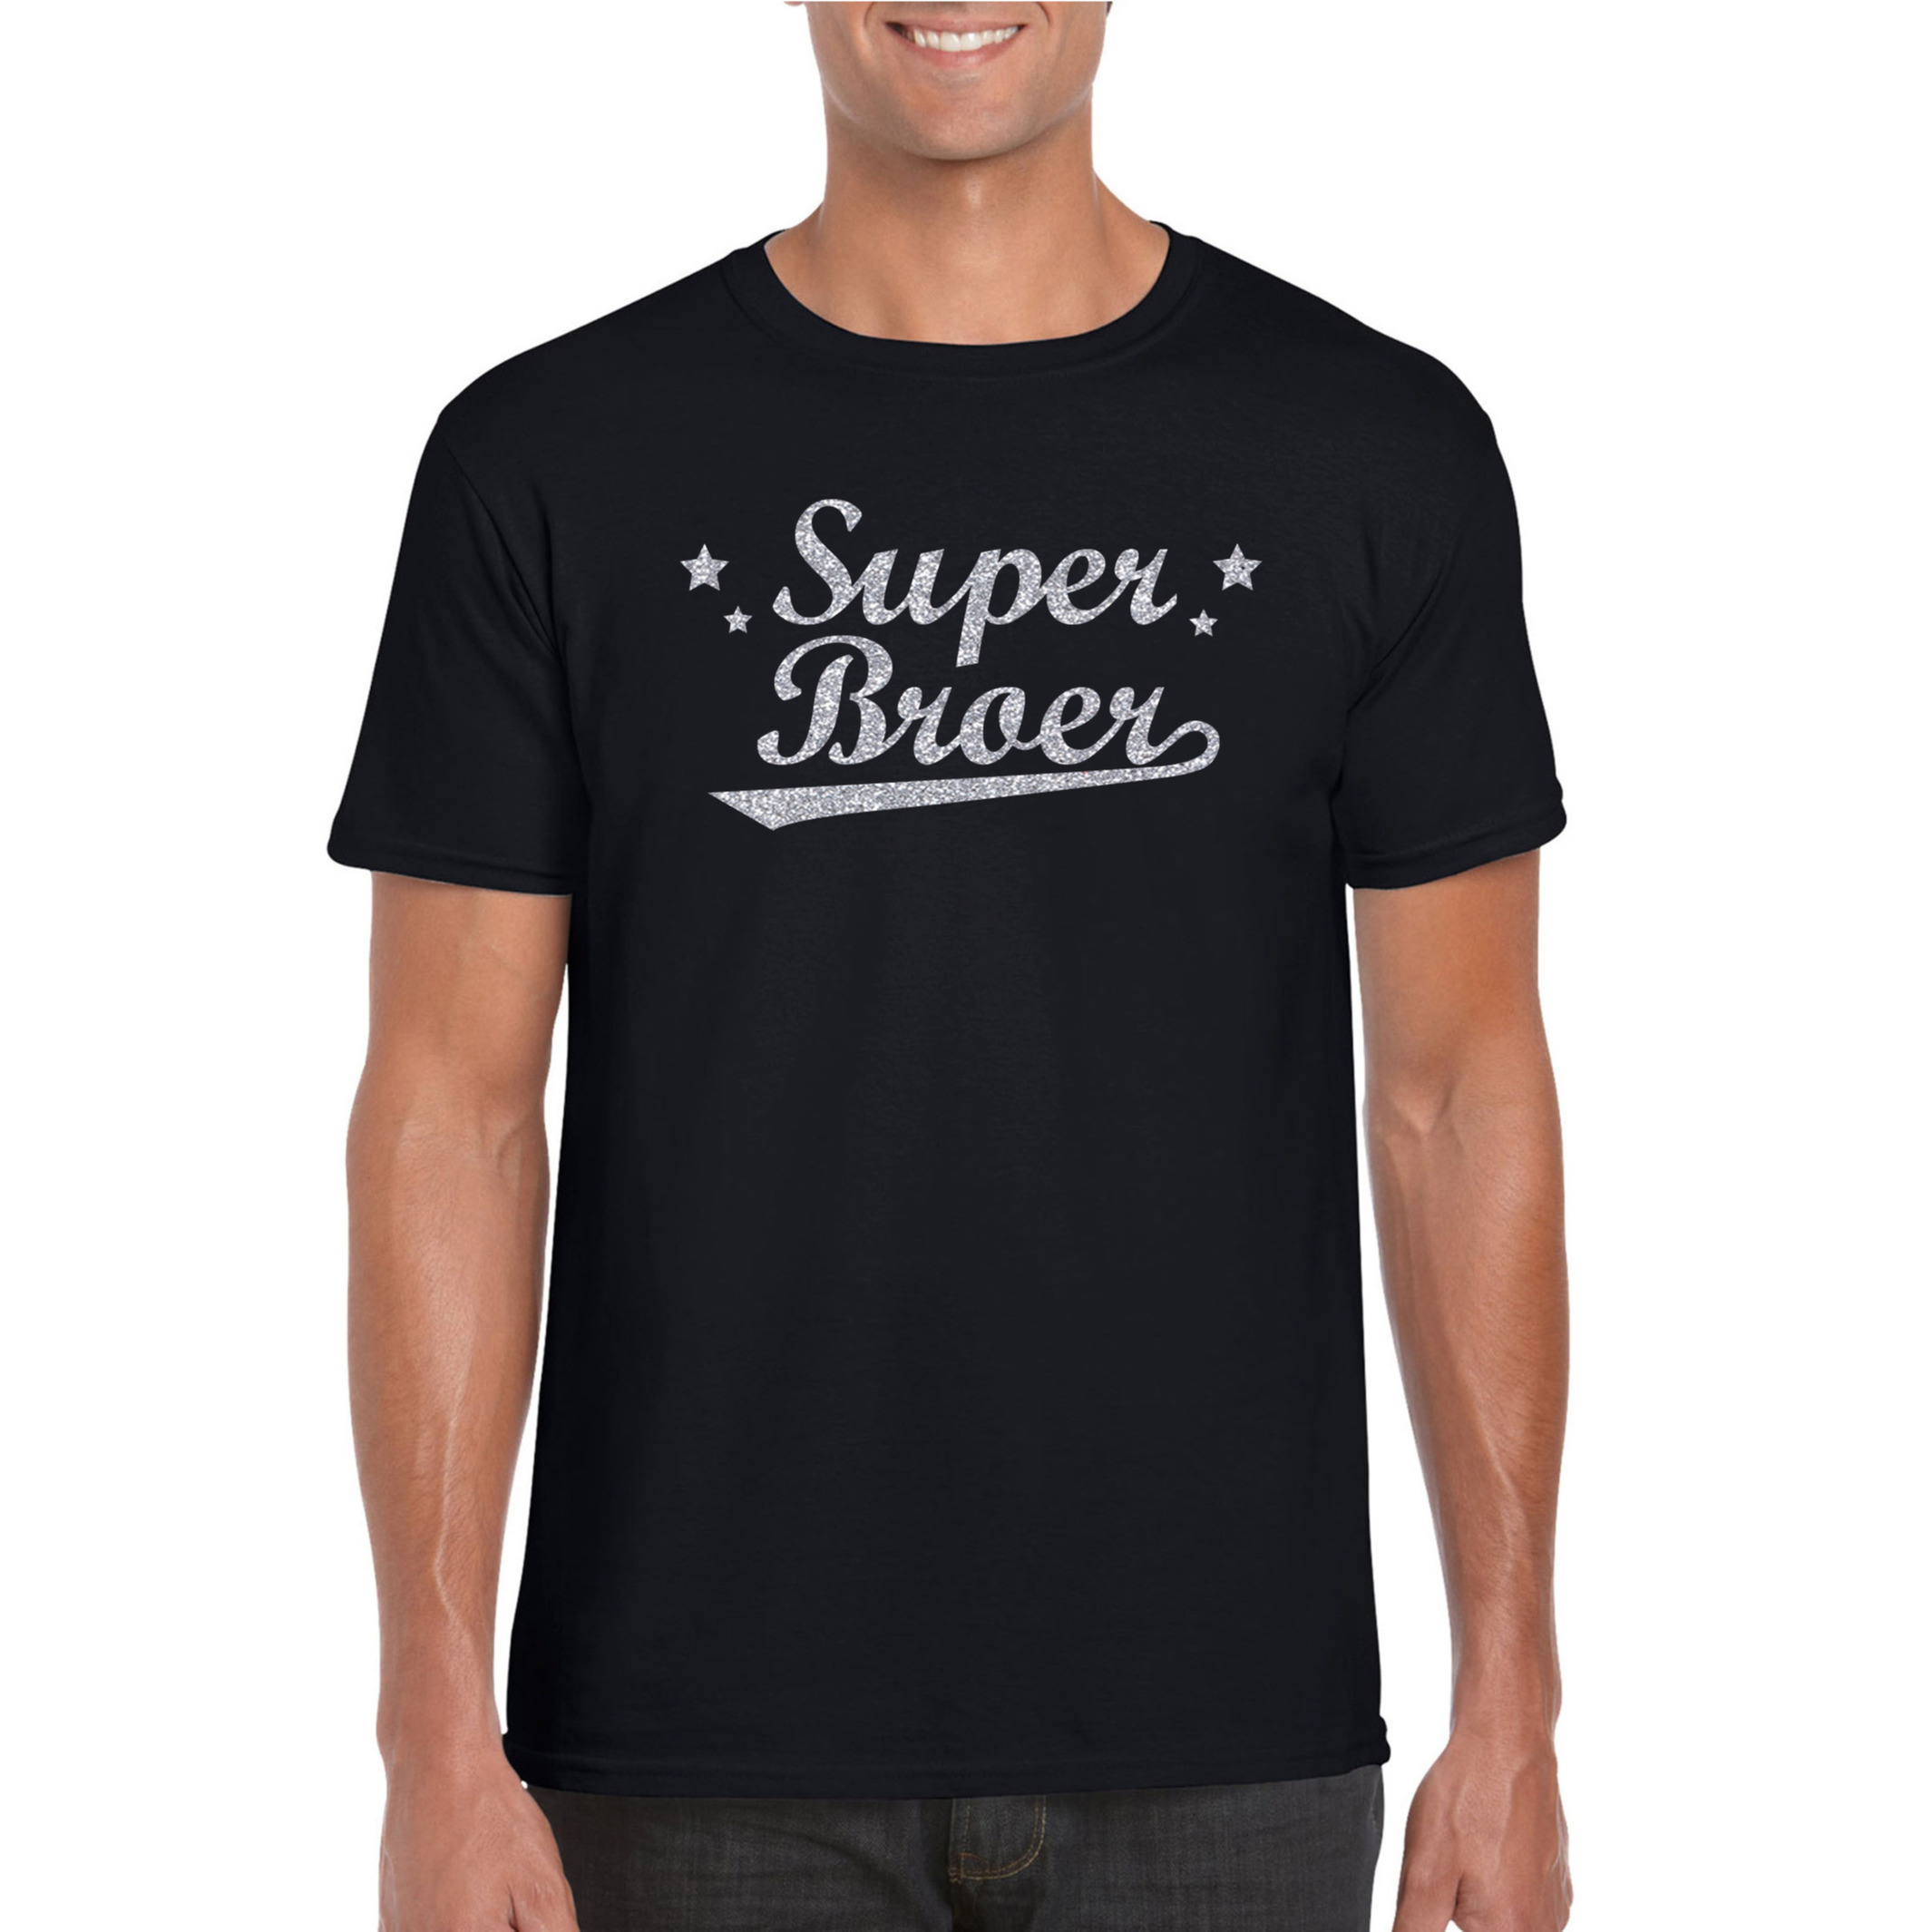 Super broer cadeau t-shirt met zilveren glitters op zwart voor heren